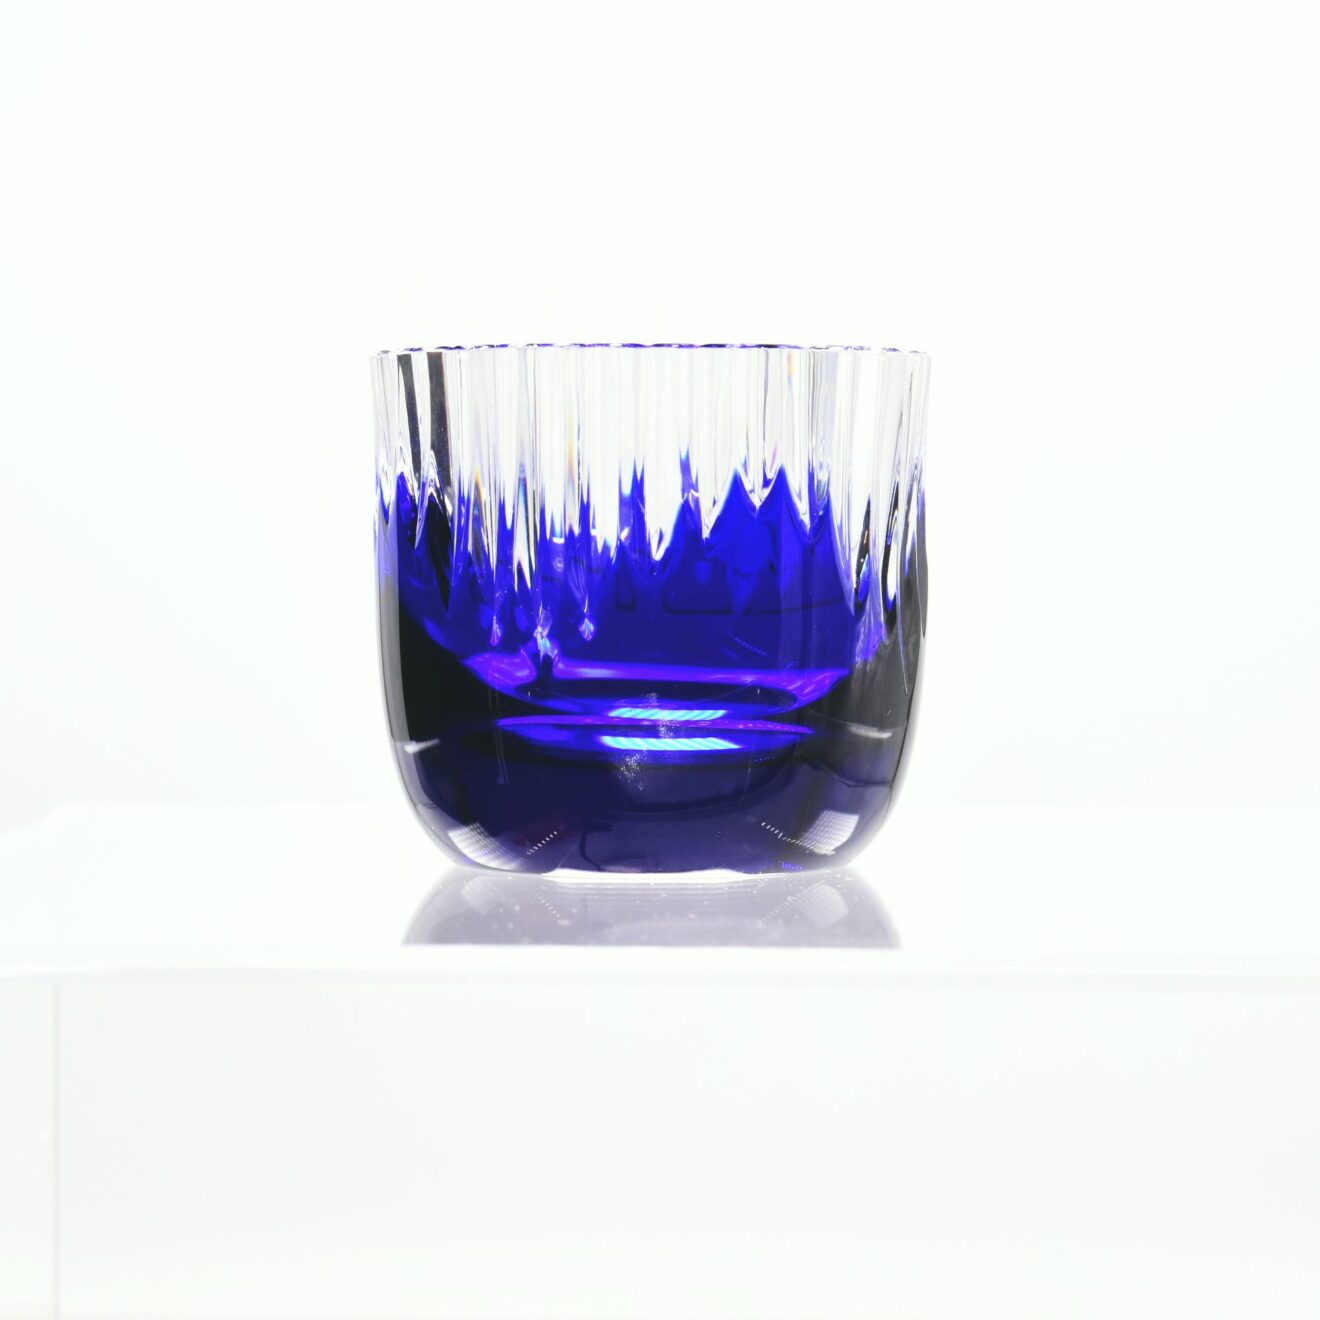 Teelichthalter “Chartres”, 6 cm. Cristallerie de Montbronn, nachtblaues Kristallglas